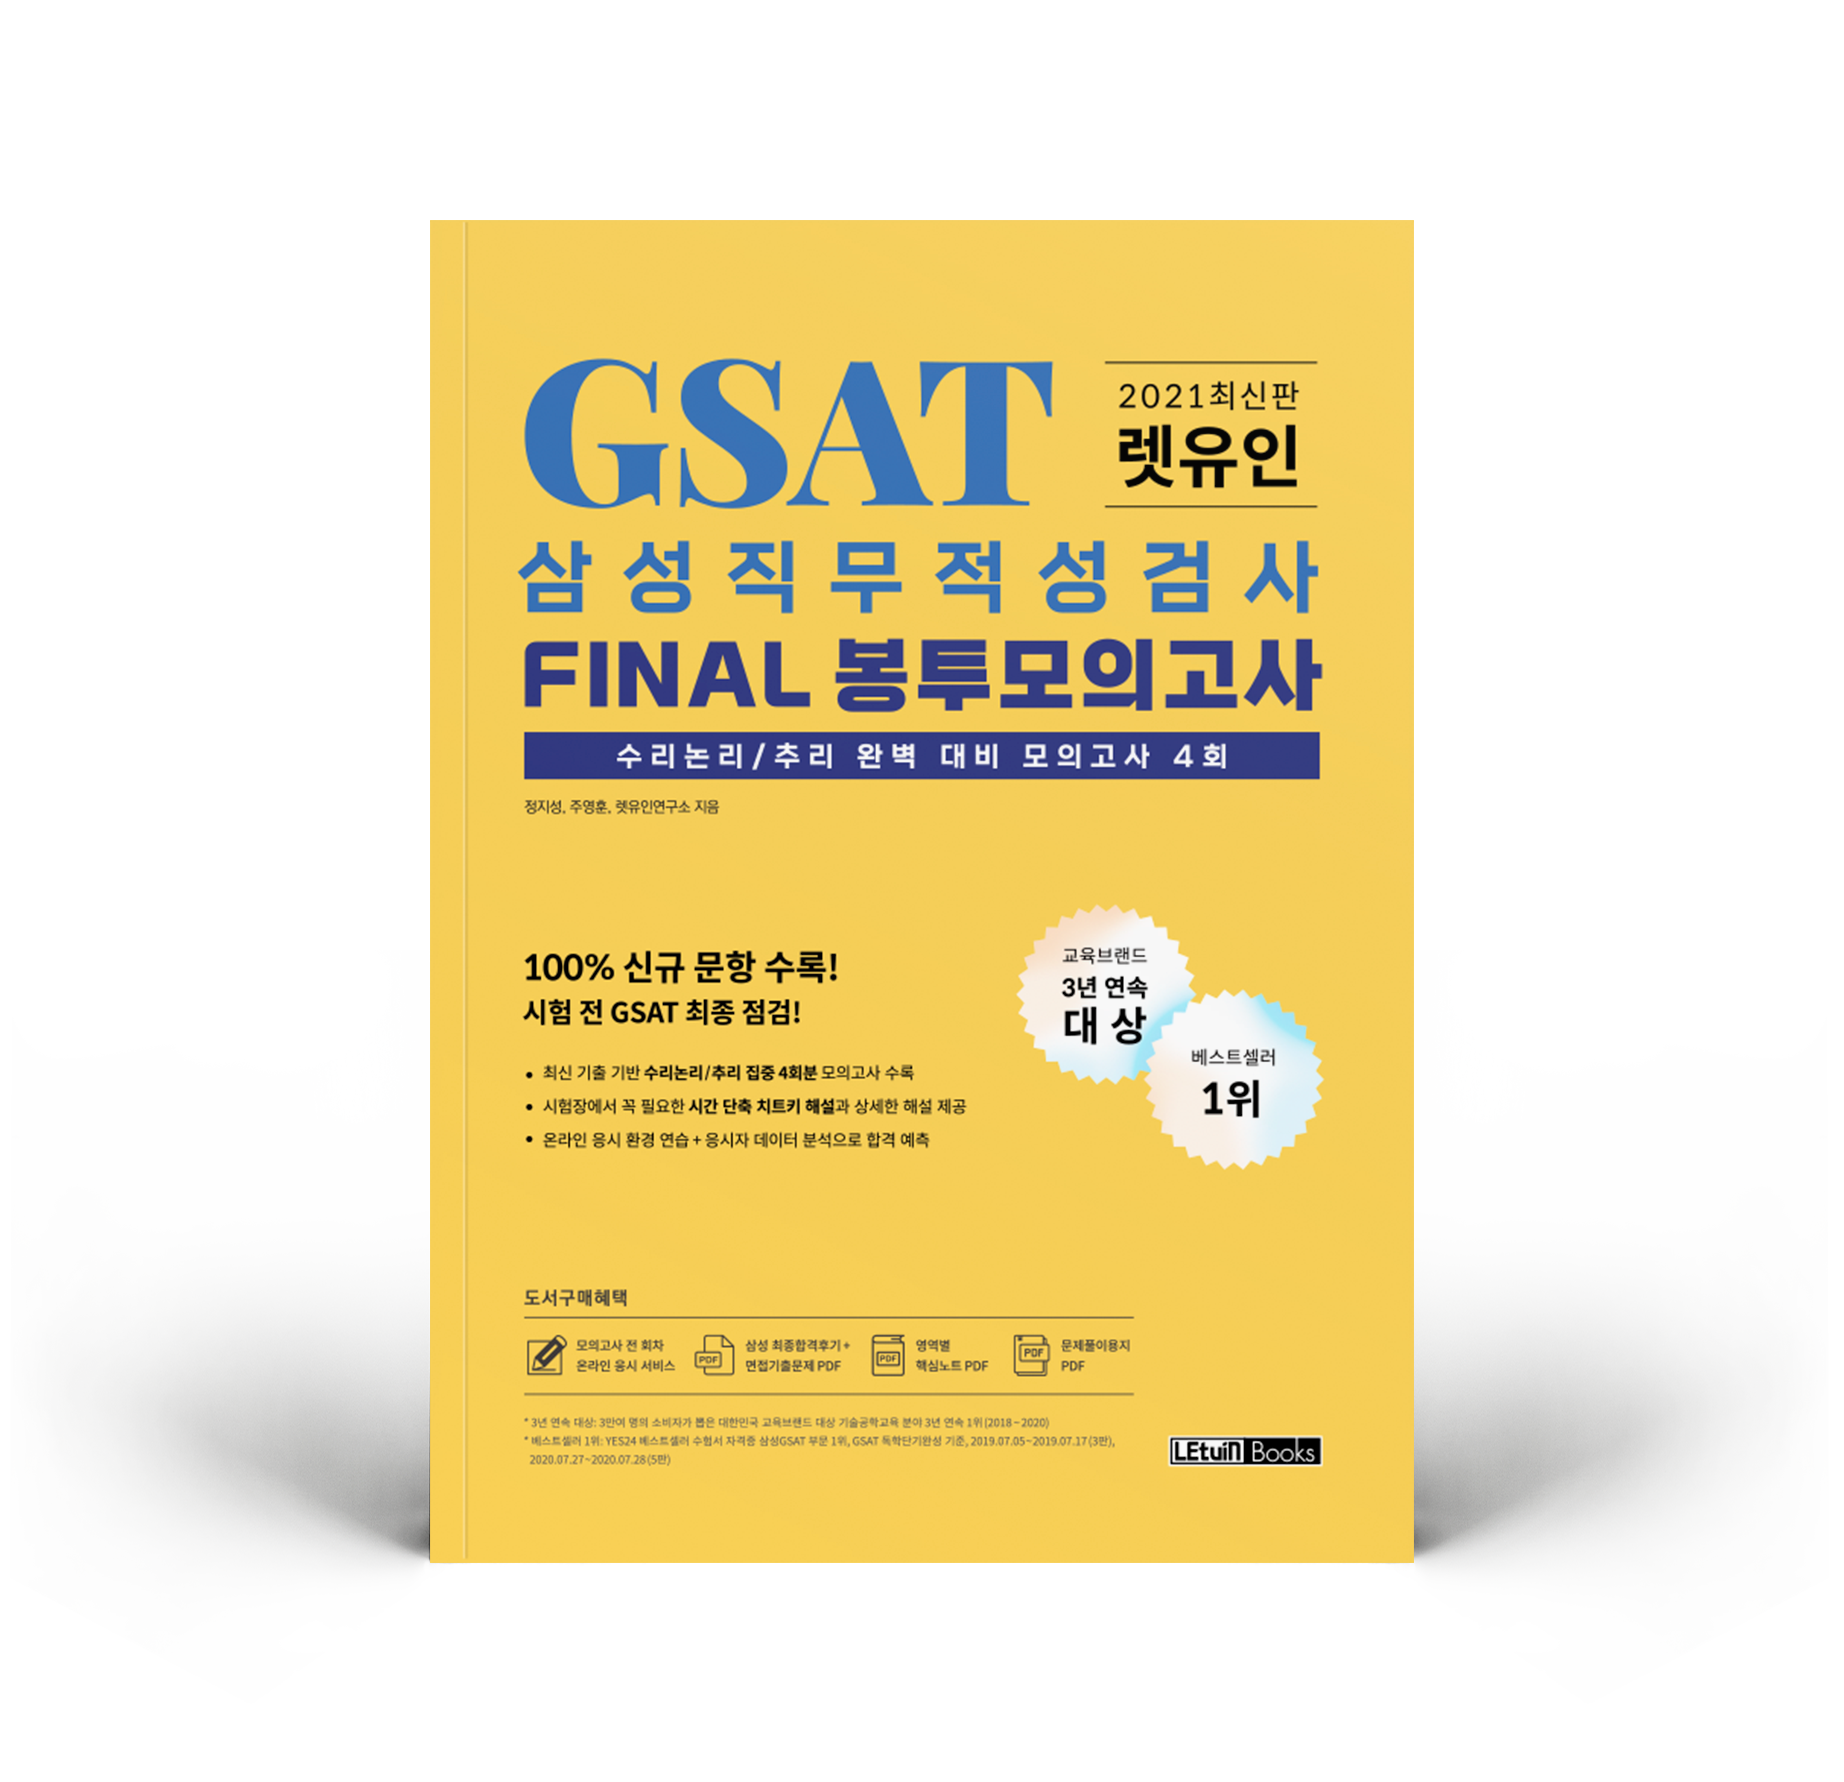 2021 최신판 렛유인 GSAT 삼성직무적성검사 FINAL 봉투모의고사